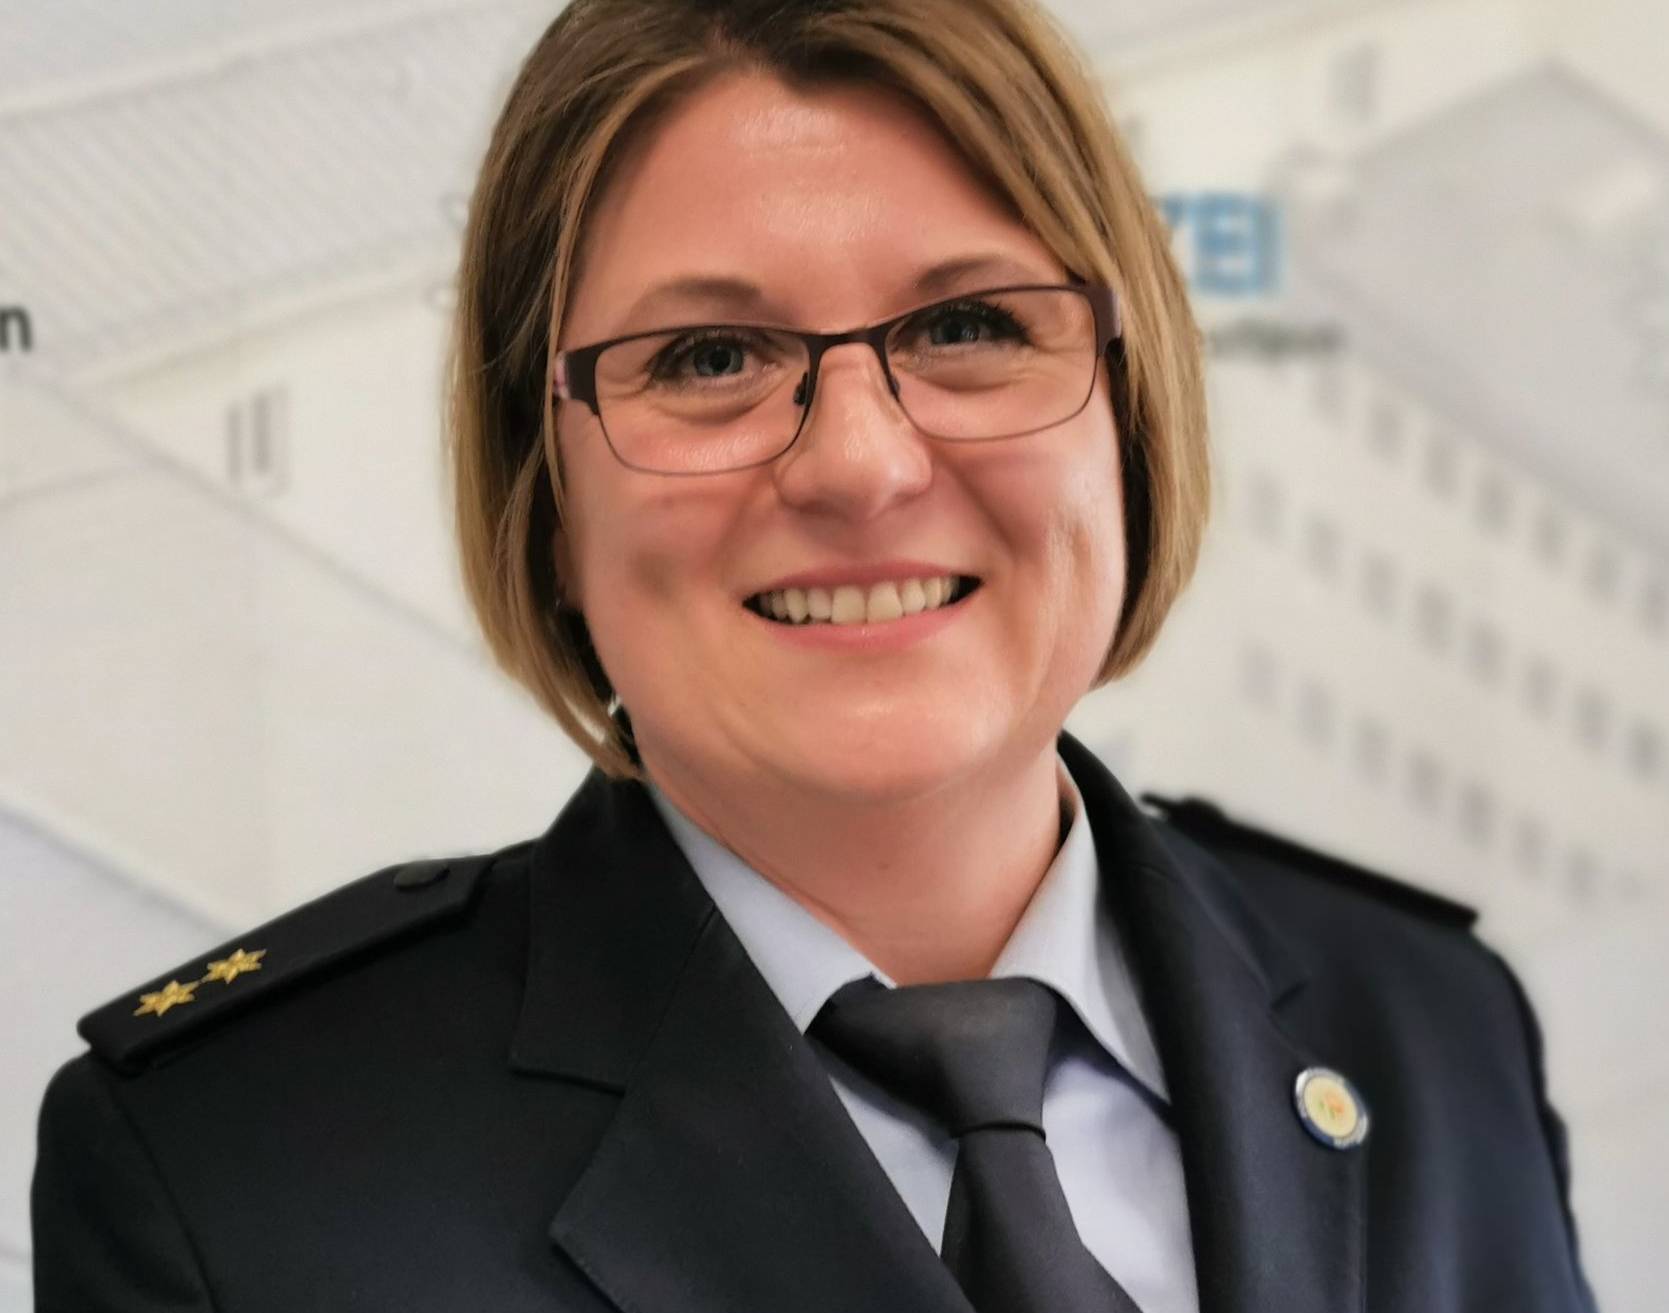  Tanja Veljovic, Leiterin der Direktion Verkehr der Polizei Wuppertal.  